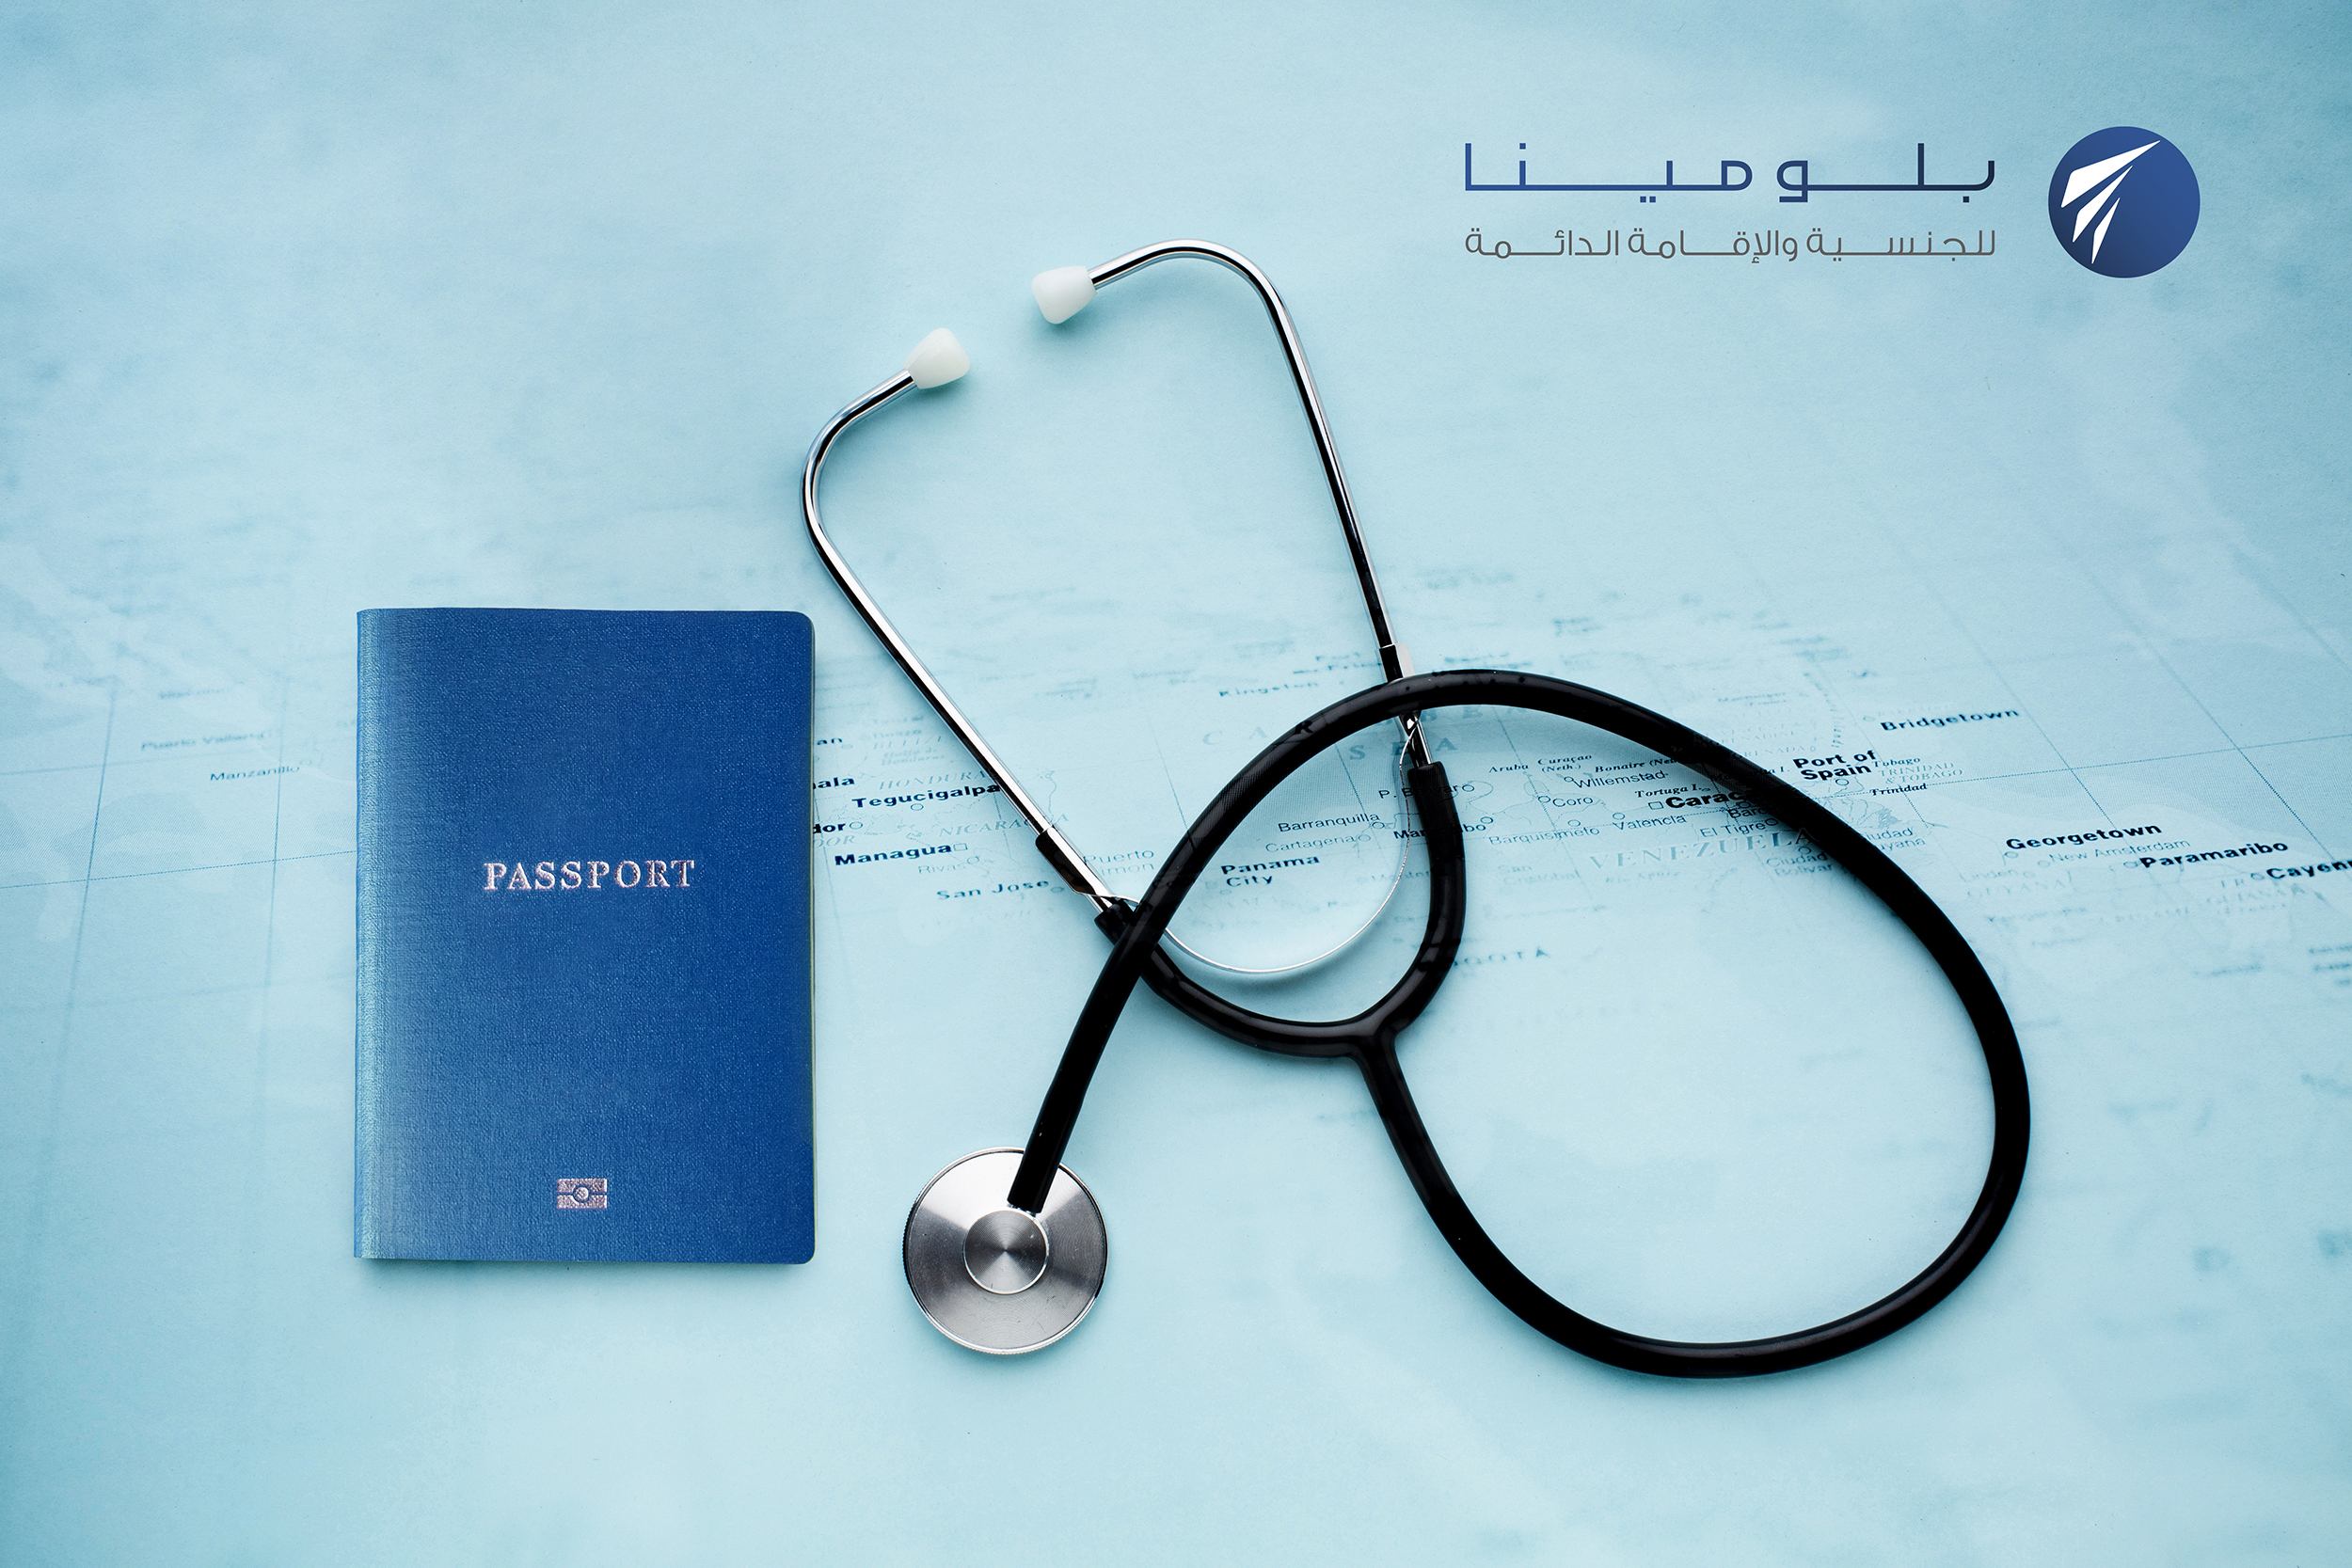 فوائد التأمين الصحي والرعاية الصحية التي يقدمها جواز السفر الثاني